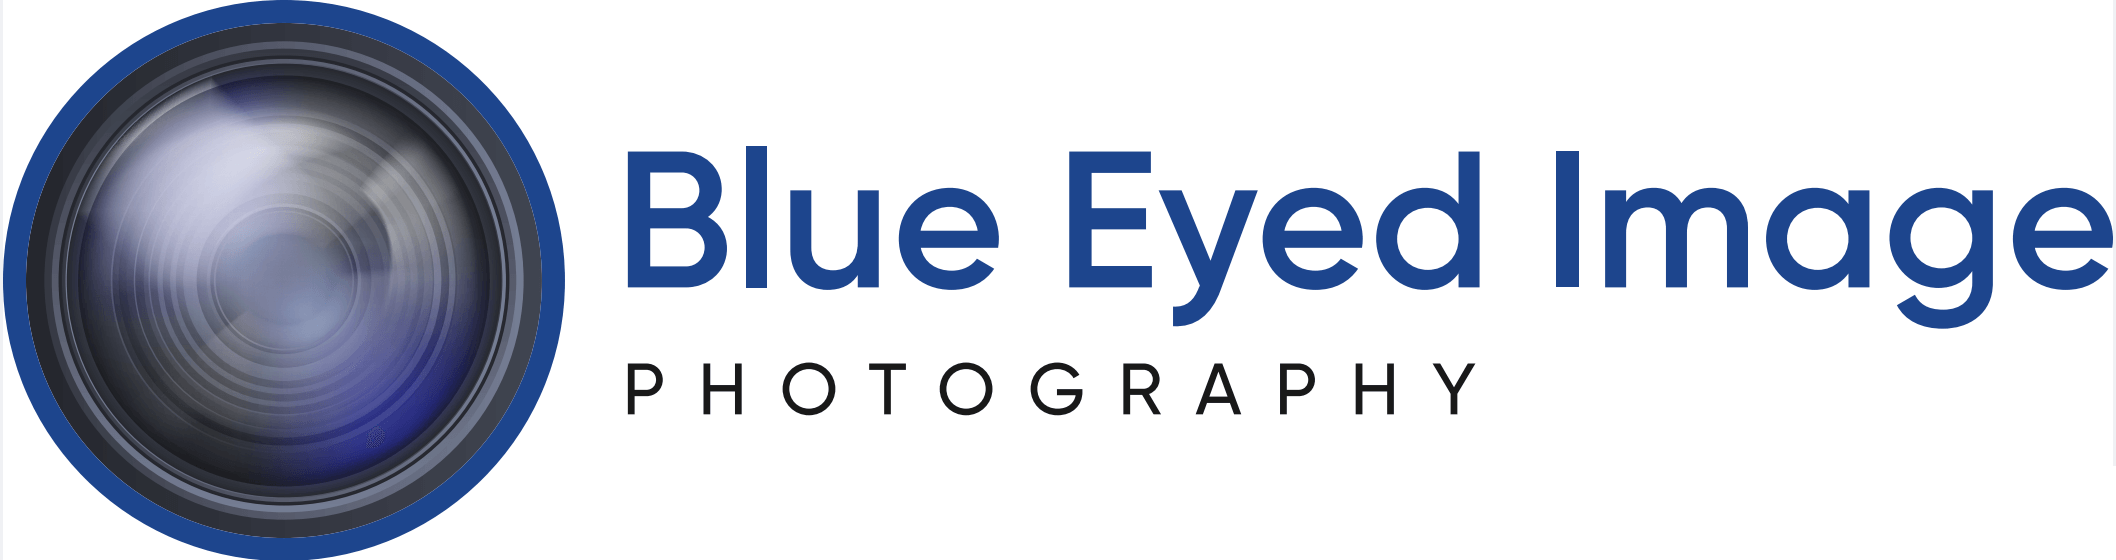 Blue Eyed Image logo2